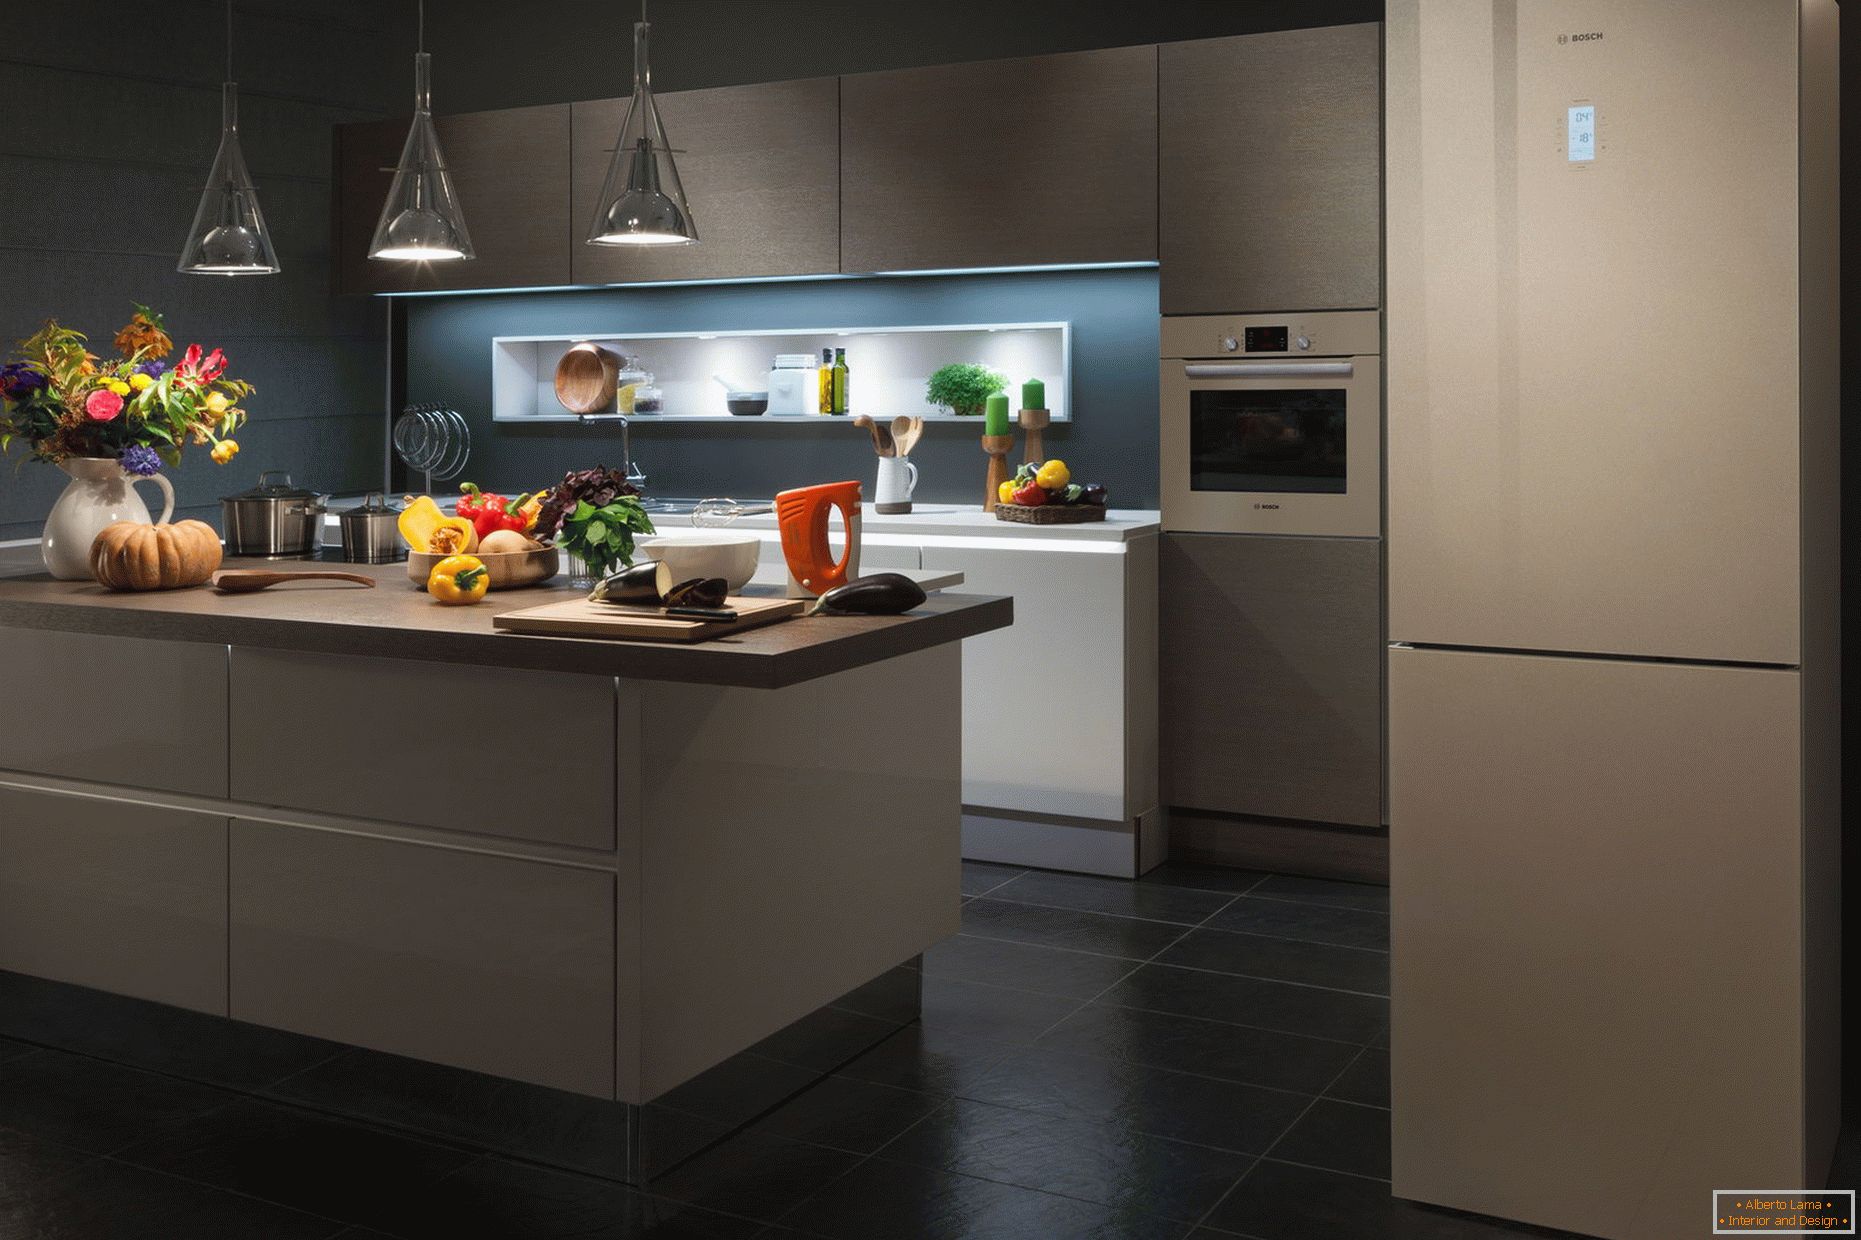 Modern kitchen interior with fridge